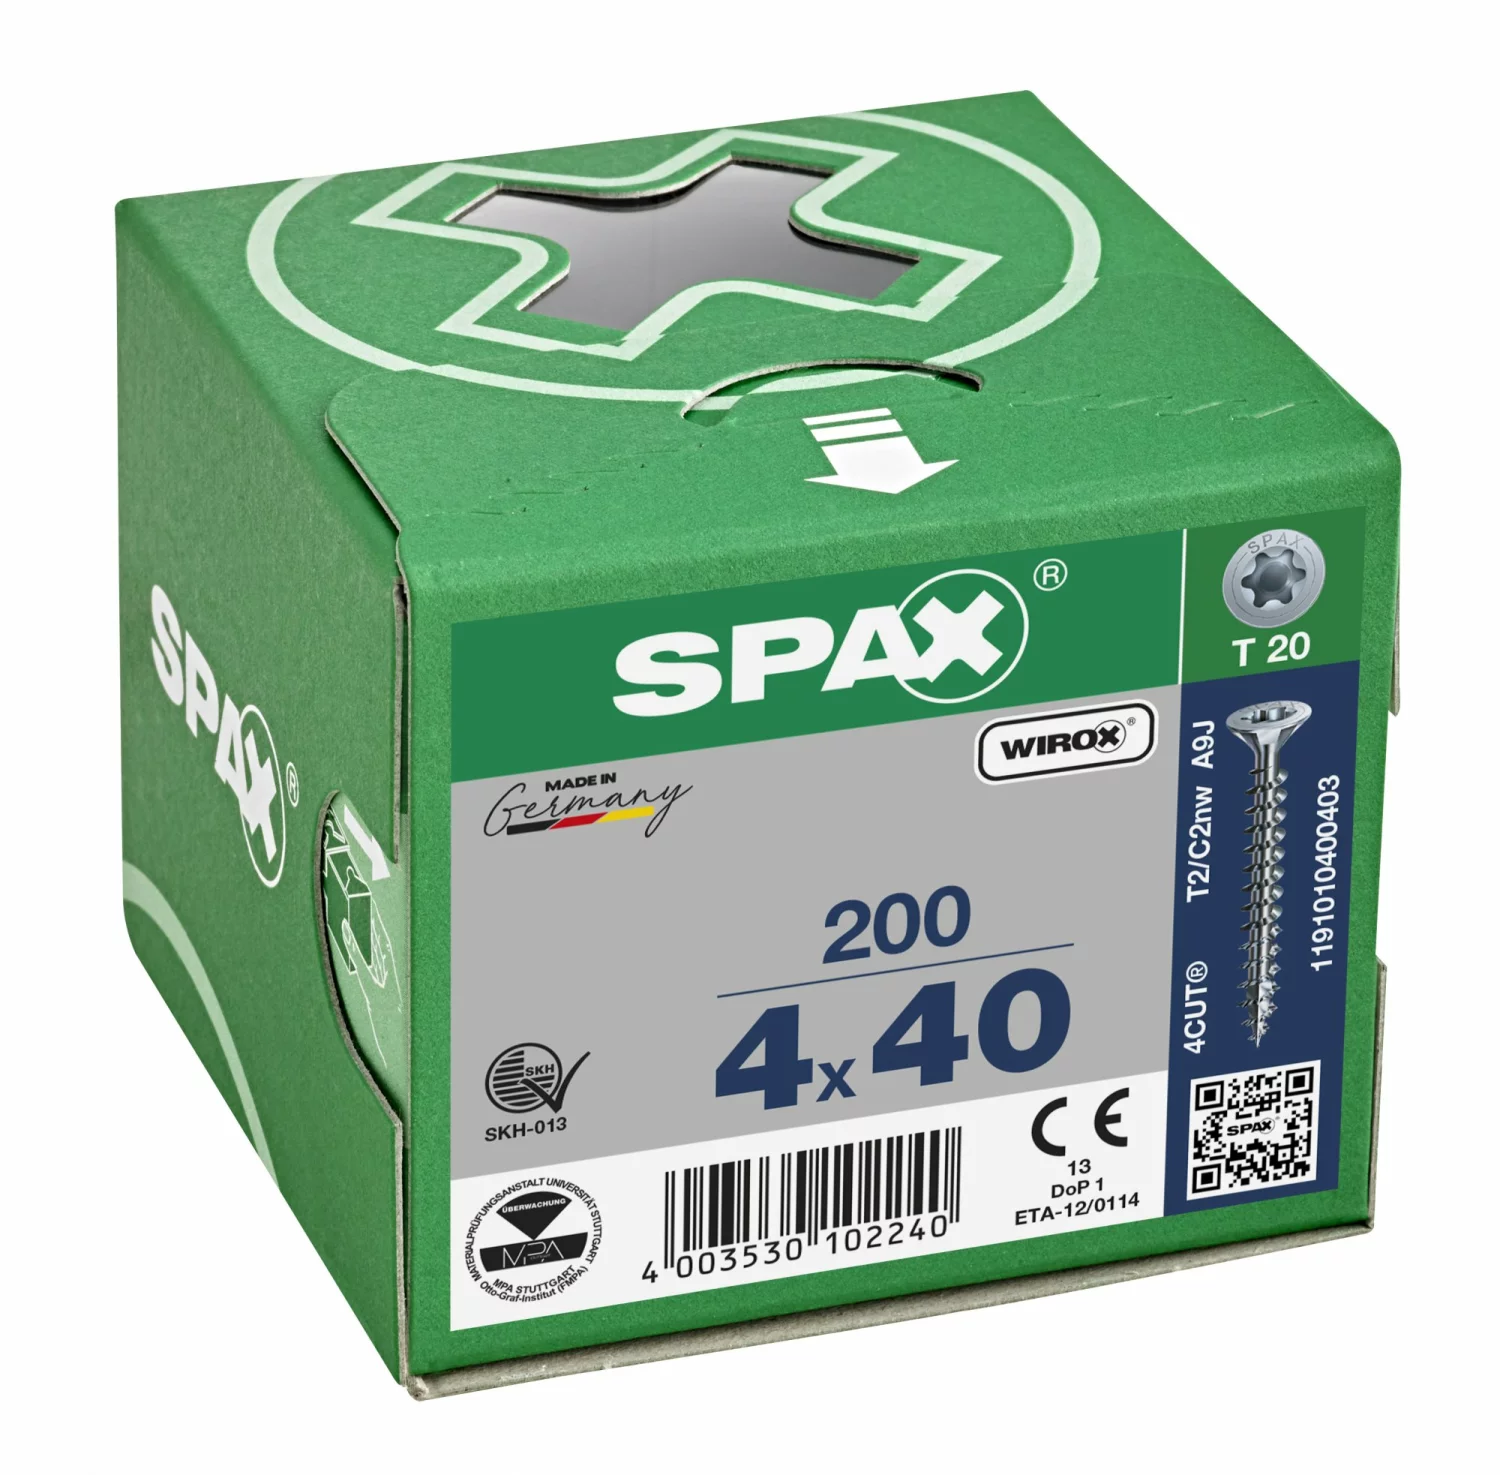 SPAX 1191010400403 Universele schroef, Verzonken kop, 4 x 40, Voldraad, T-STAR plus T20 - WIROX - 200 stuks